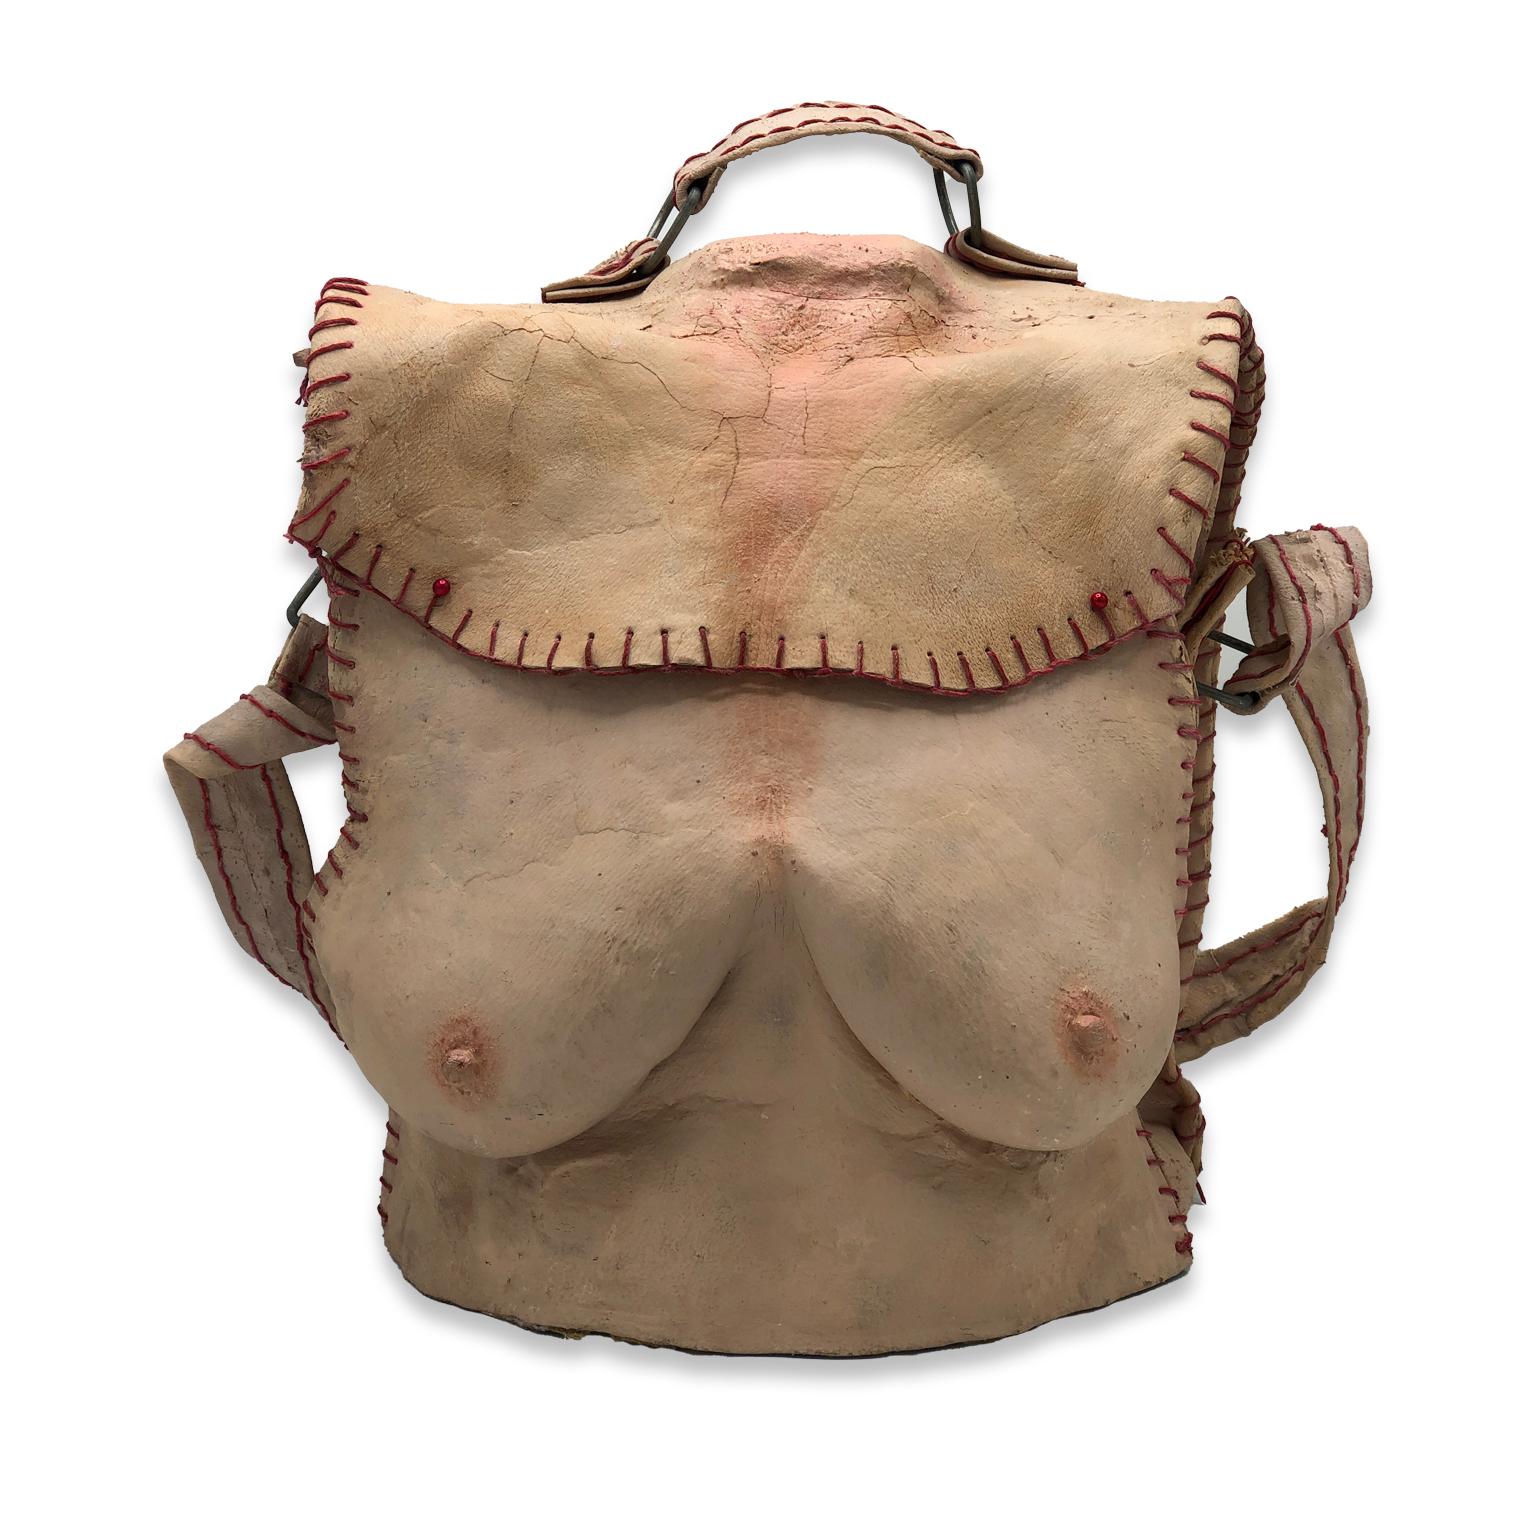 Miriam Meulepas Nude Sculpture - Nude Female Figurative Latex Contemporary Object - Breast Bag II